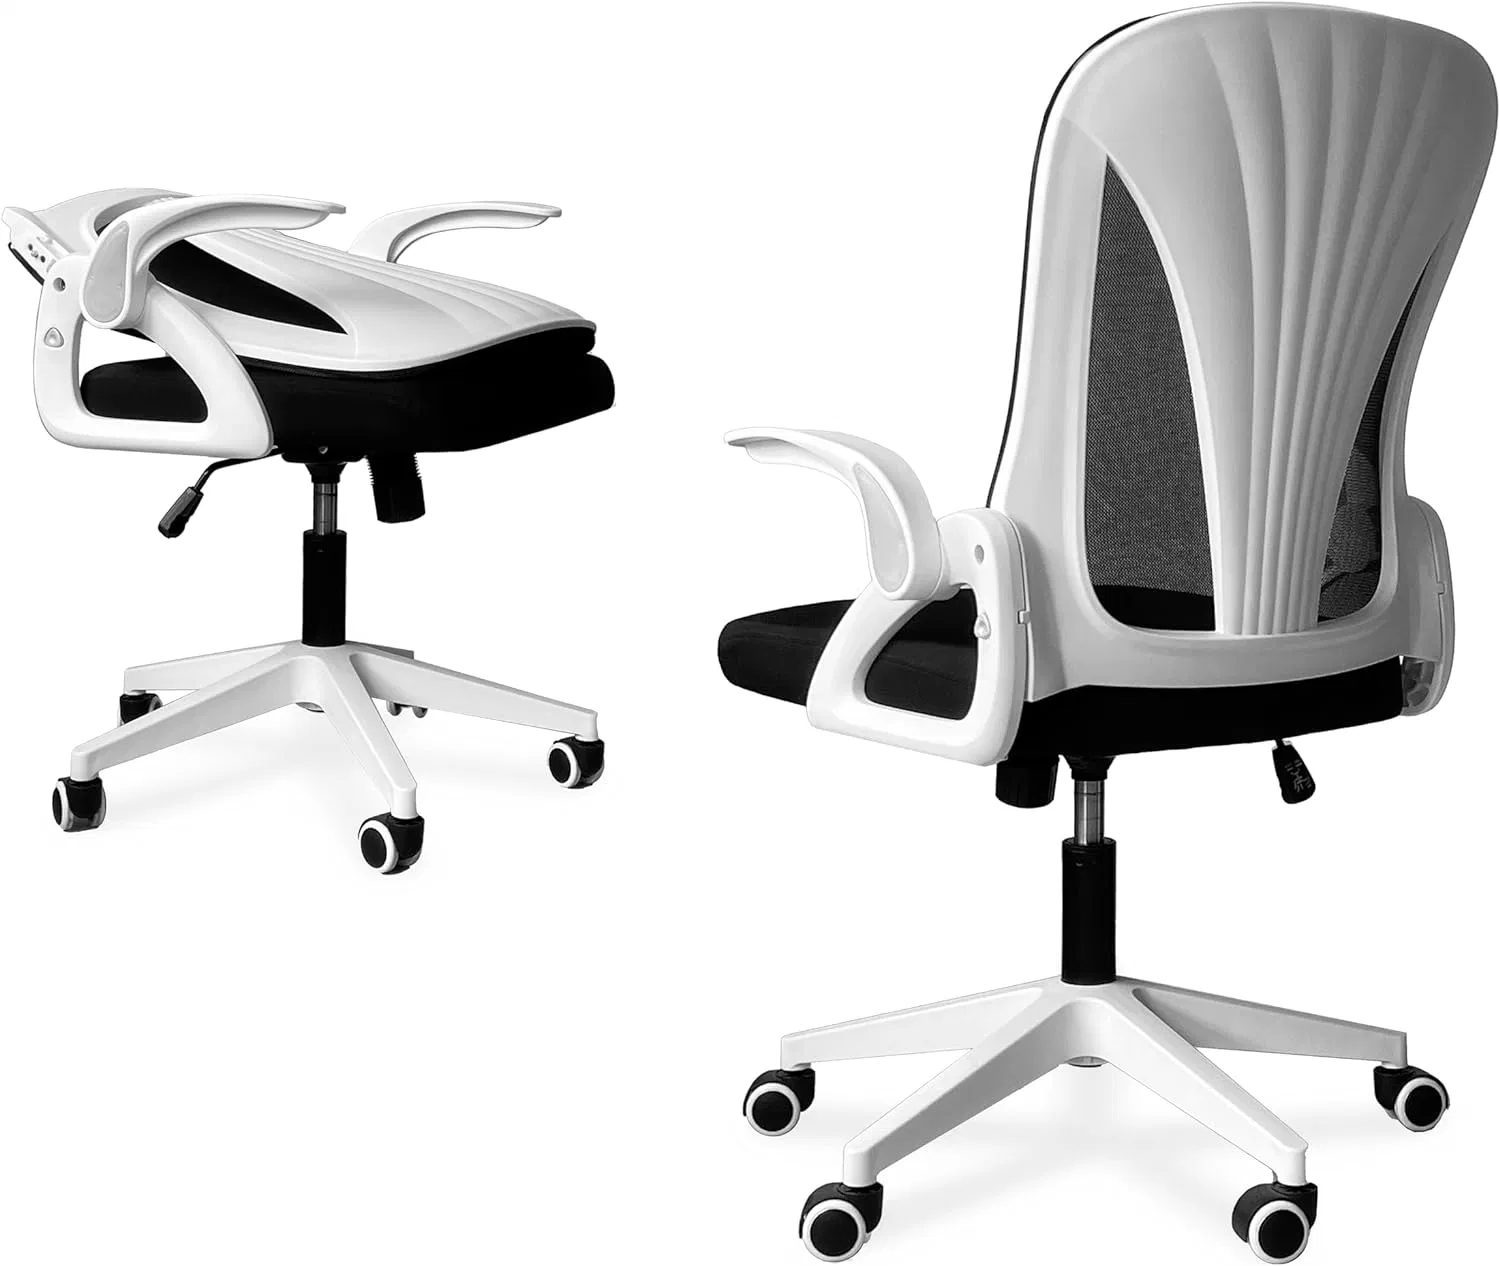 Faltbarer Bürostuhl für kleine Räume ergonomischer Netzcomputer Stuhl Für Schlafzimmer Schreibtischstuhl für Heimarbeit